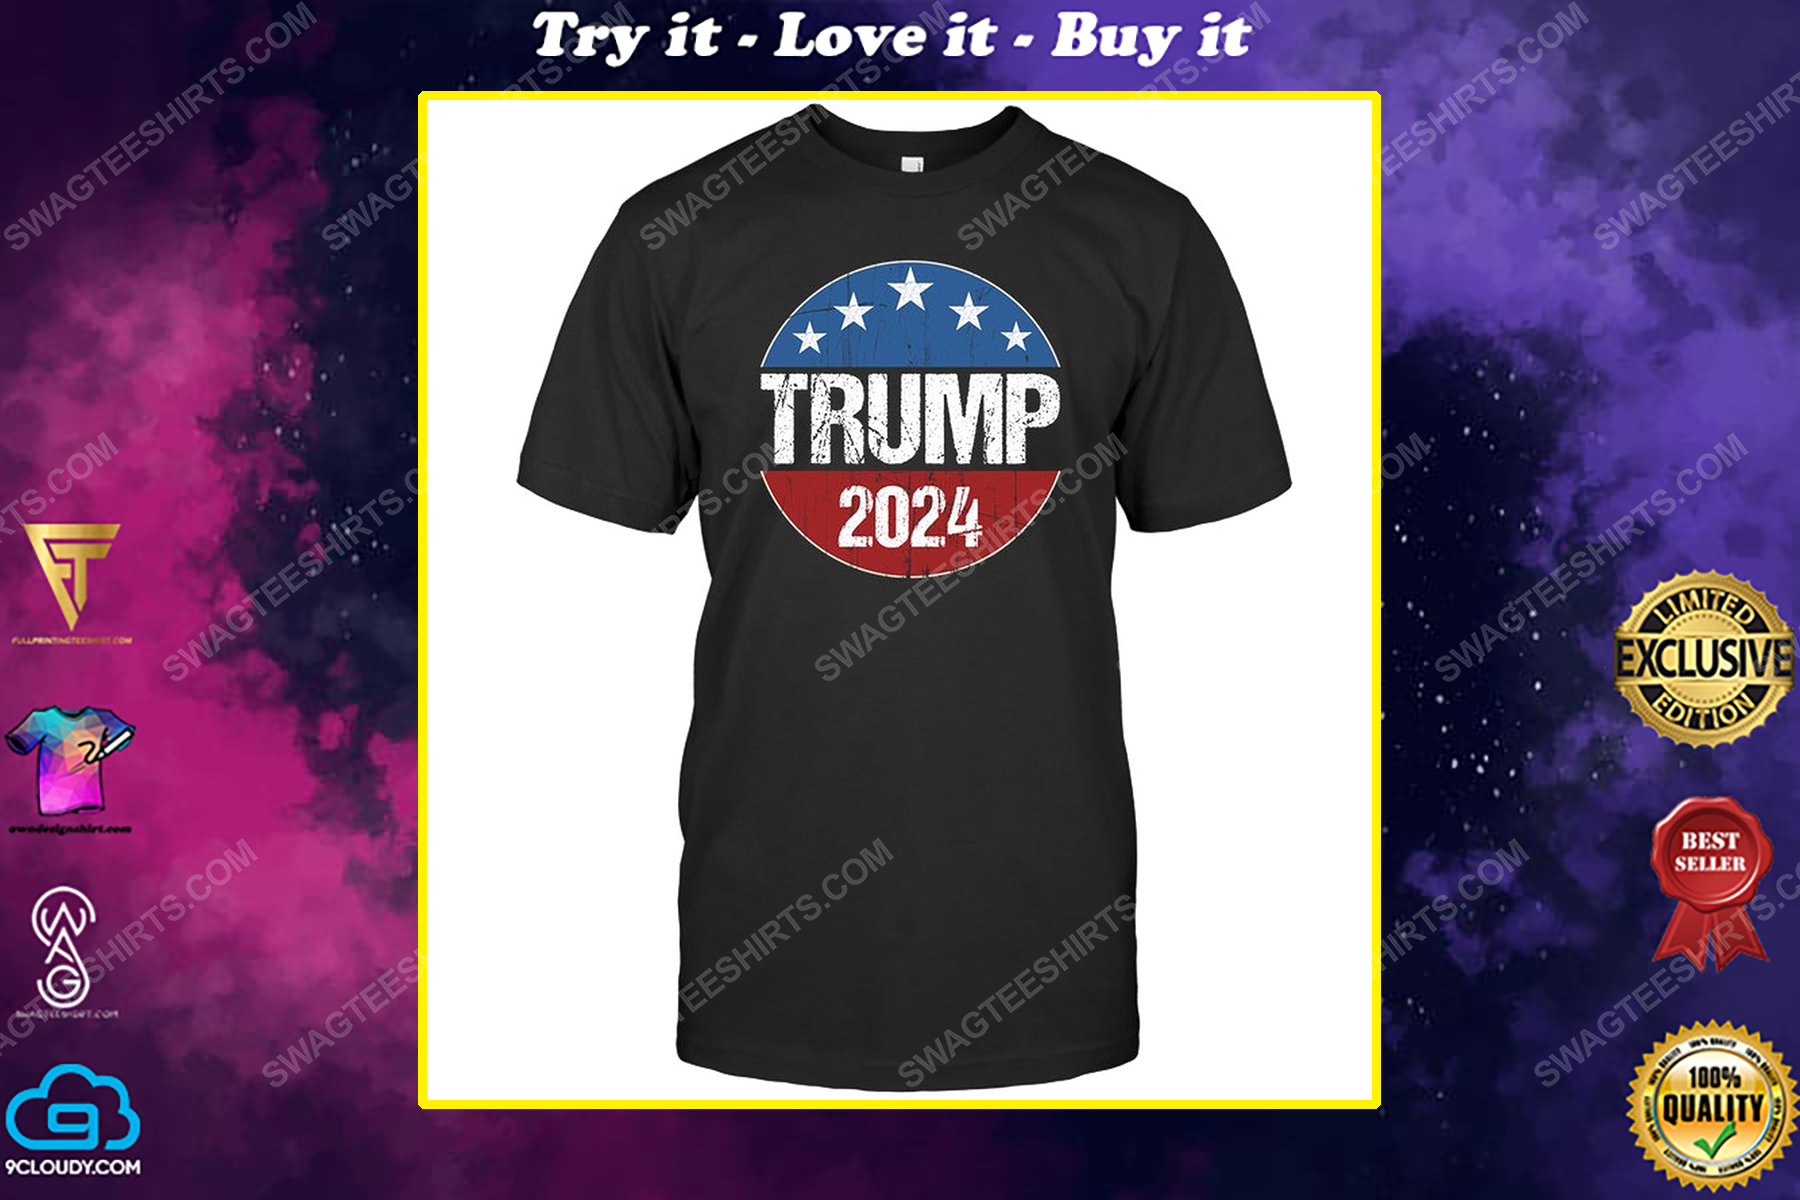 Trump 2024 american flag political shirt